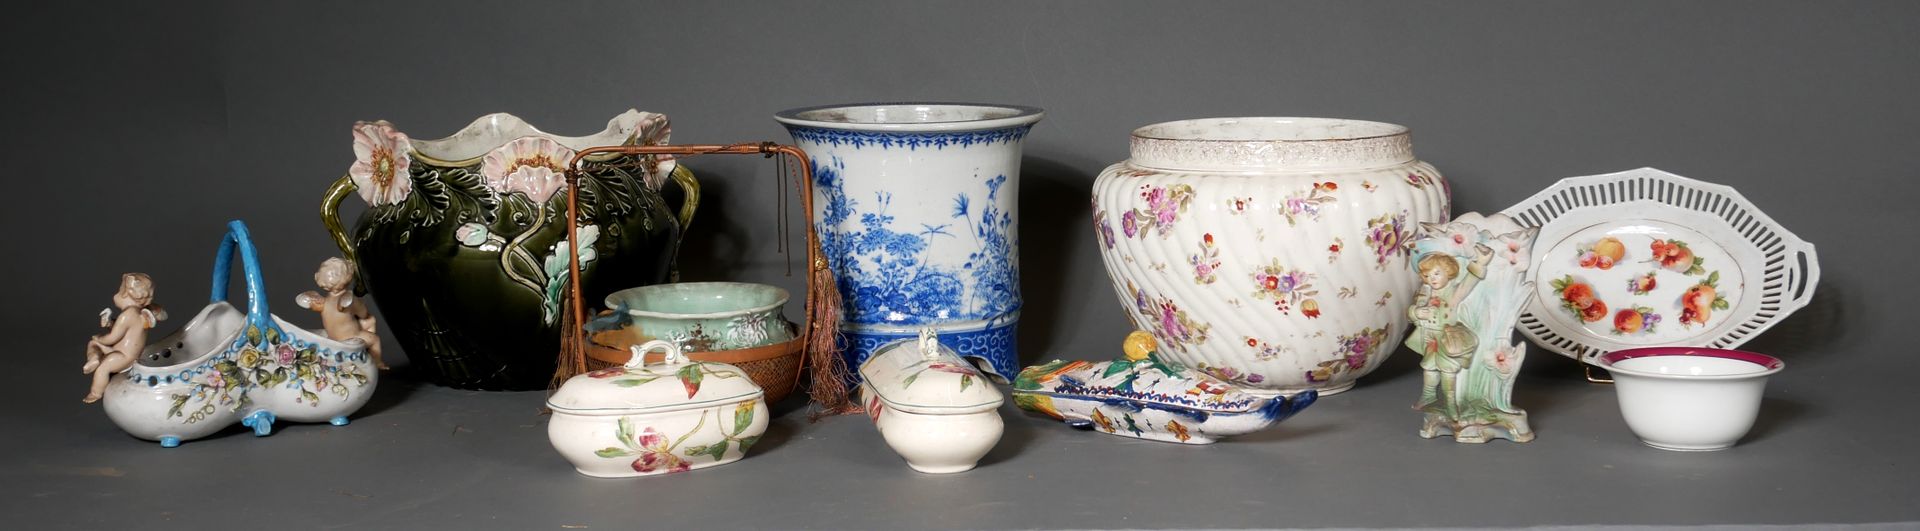 Null *Lot de caches-pots, plats et vases divers en céramique (accidents)